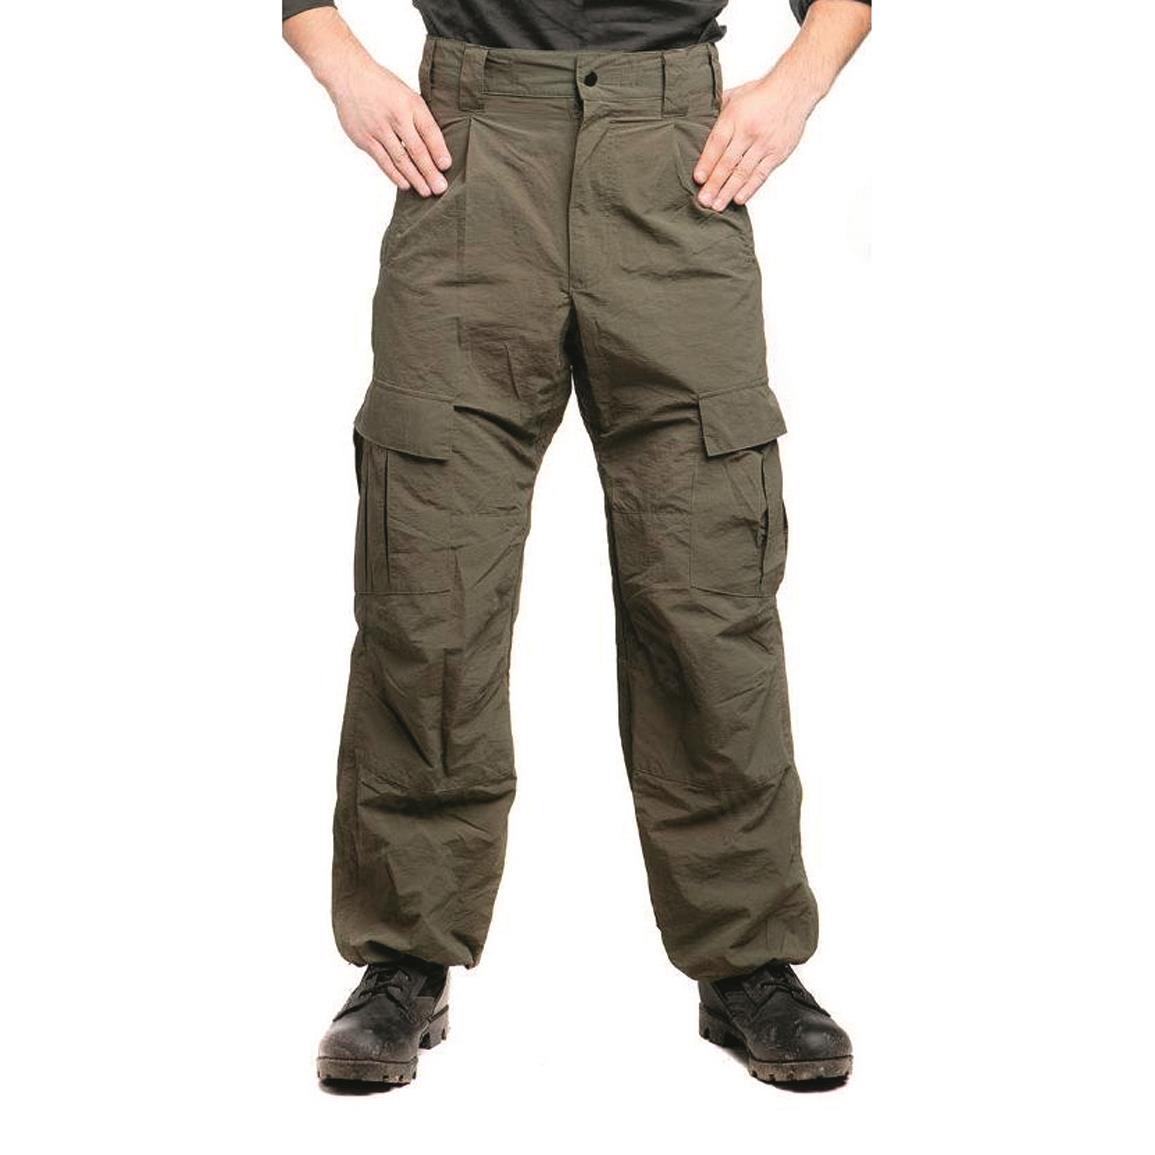 Mil-Tec Arid Tactical Warrior Pants, Woodland Camo - 228657, Tactical ...